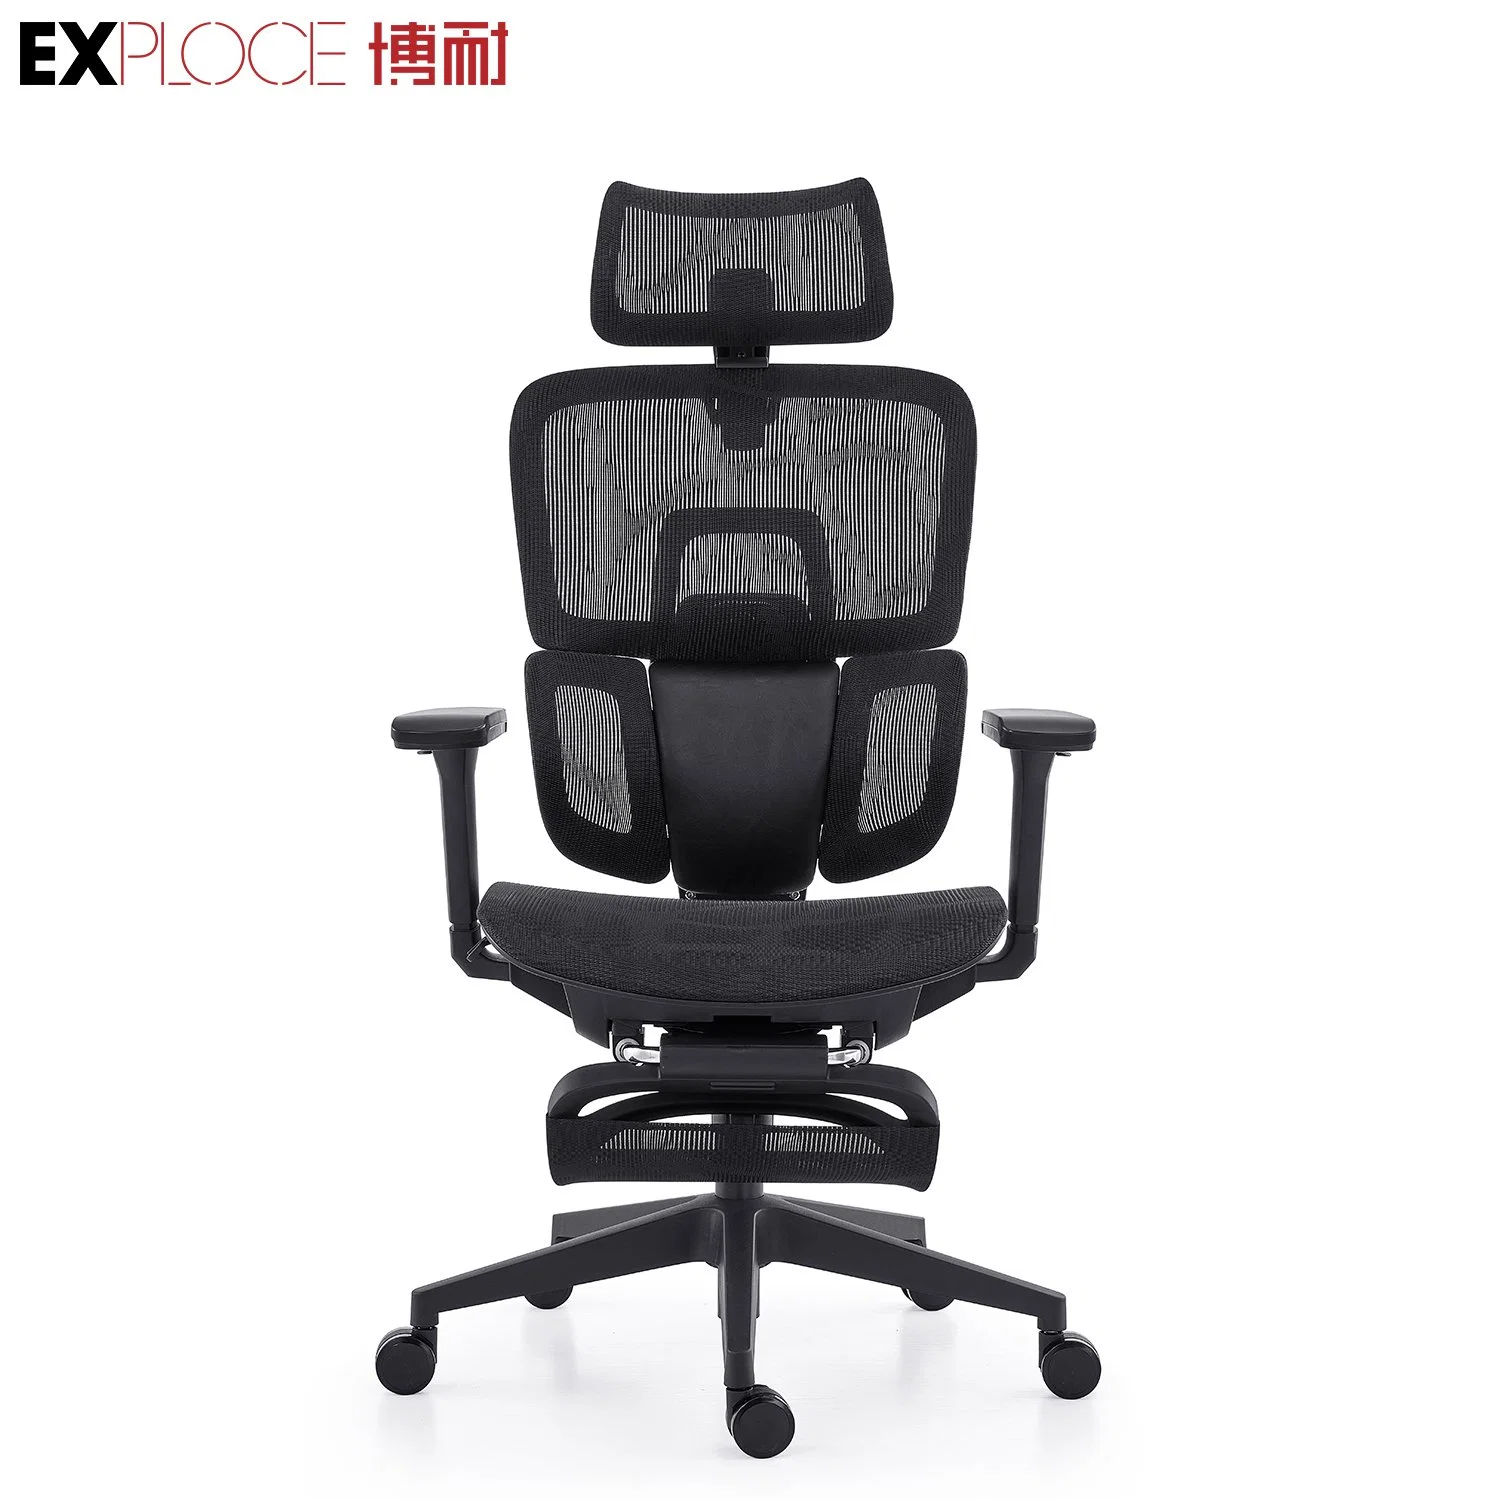 Adjustable Armrest Modern Swivel High Back Ergonomic Mesh Office Chair